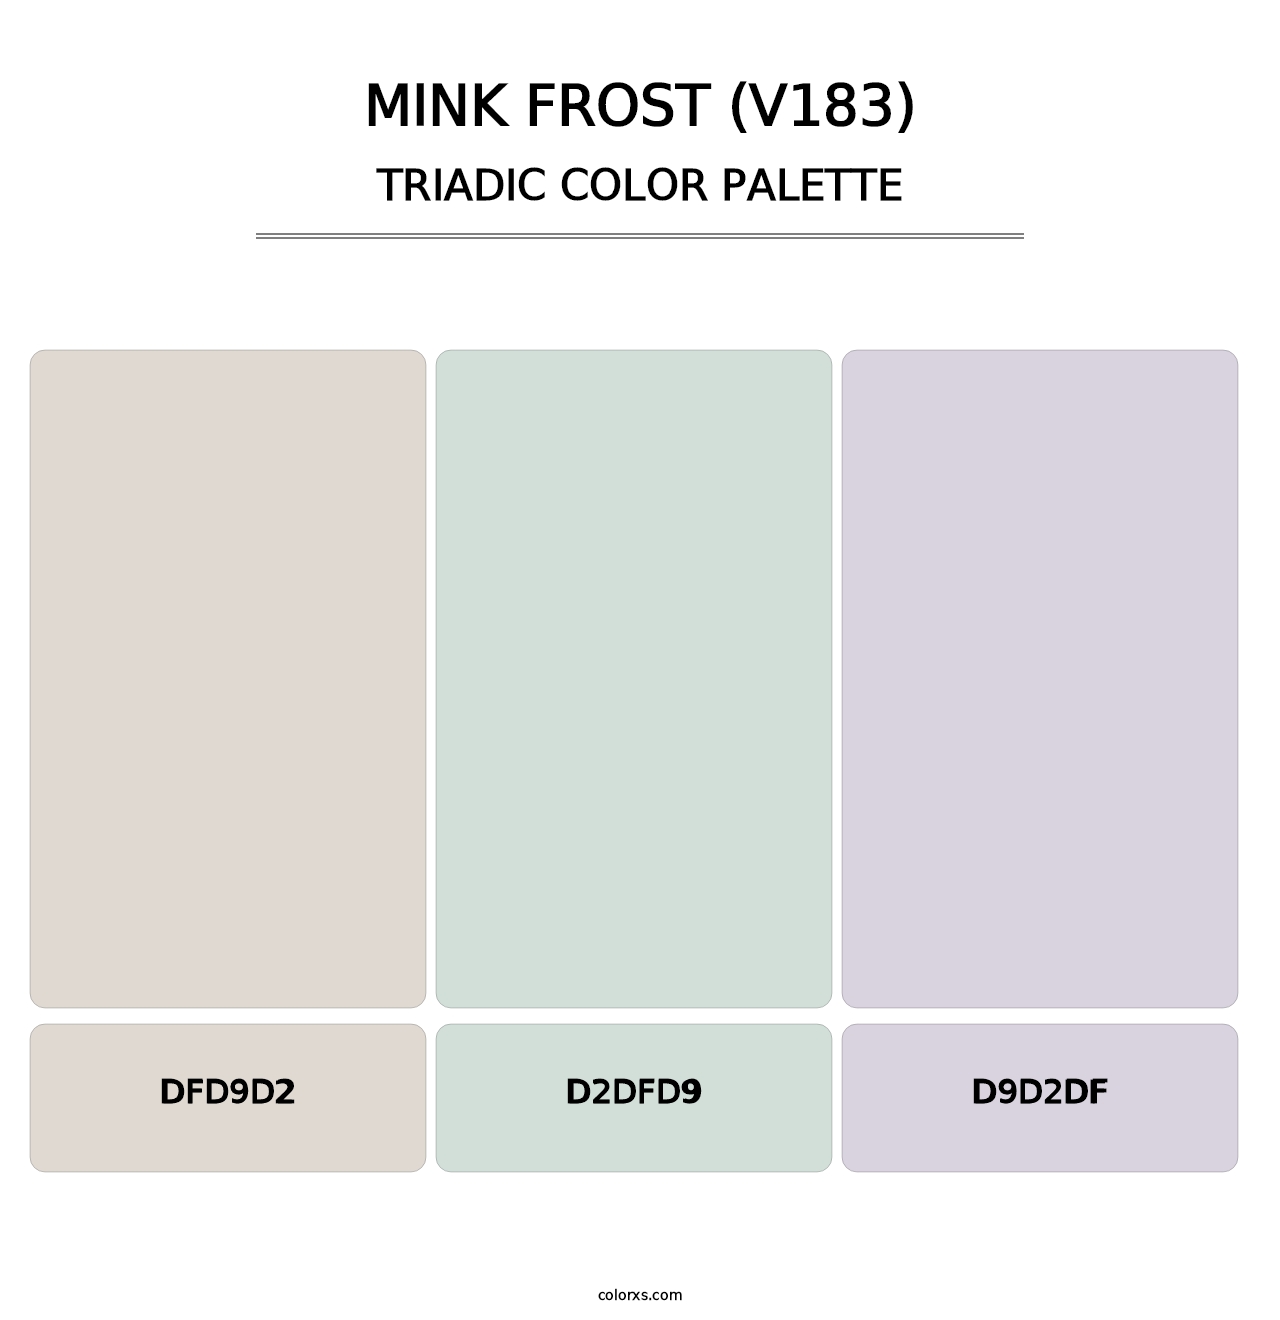 Mink Frost (V183) - Triadic Color Palette